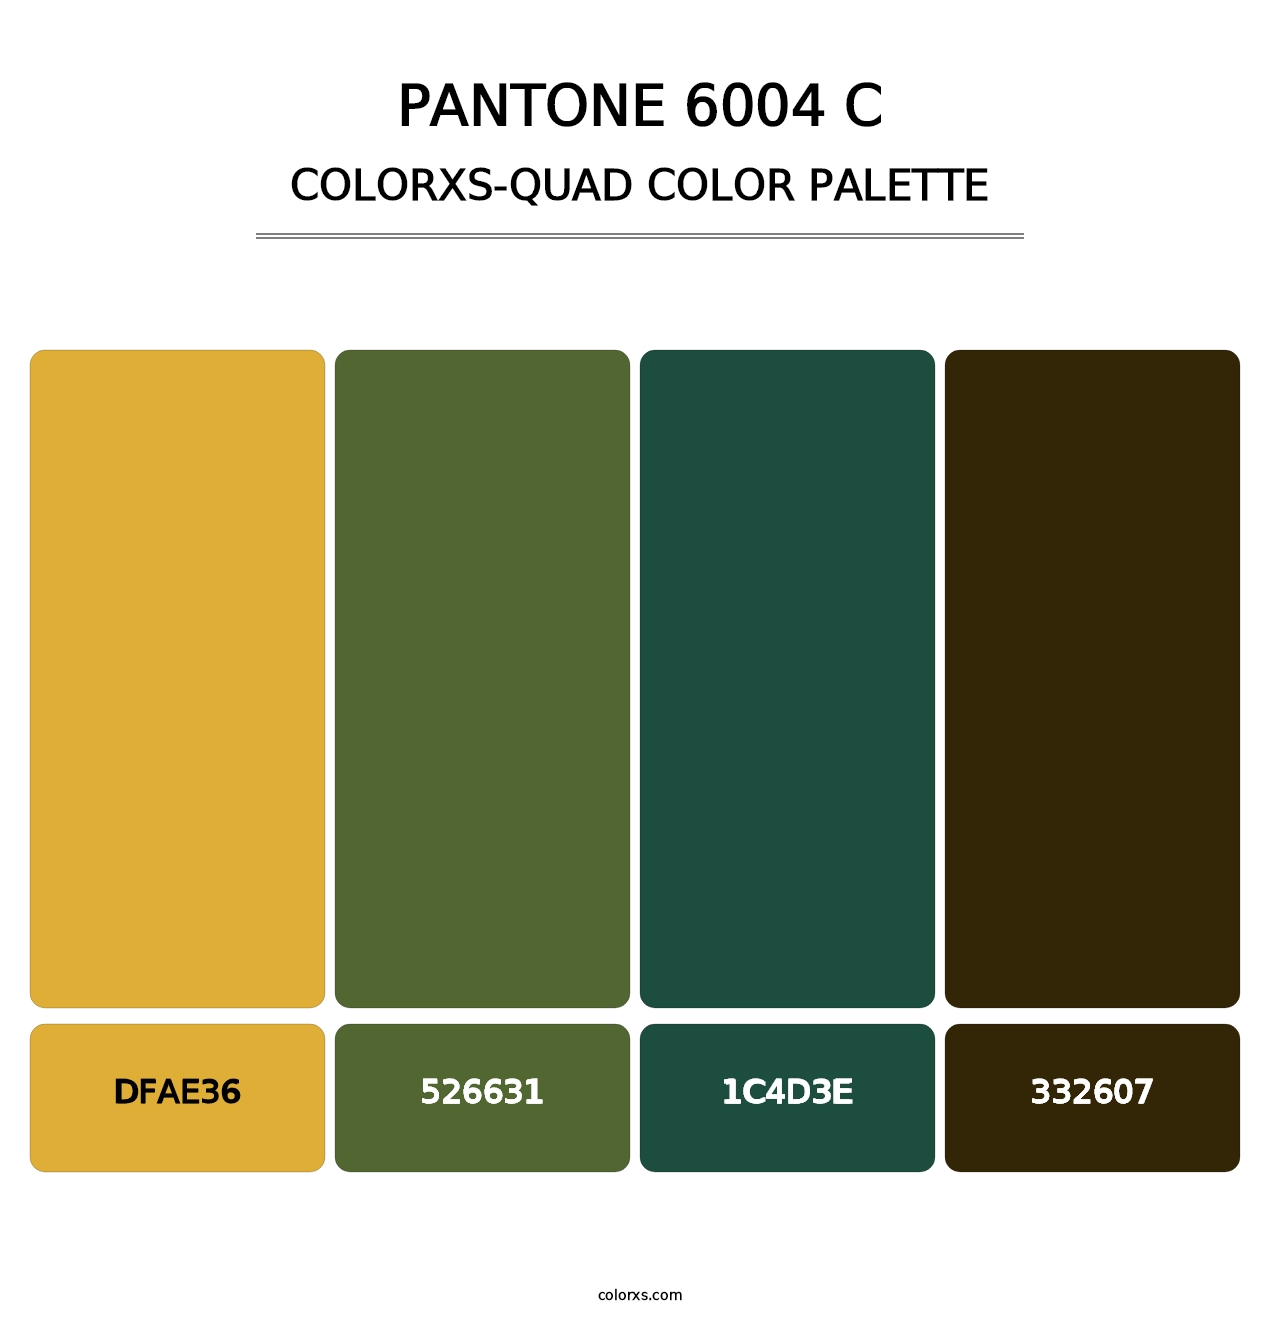 PANTONE 6004 C - Colorxs Quad Palette